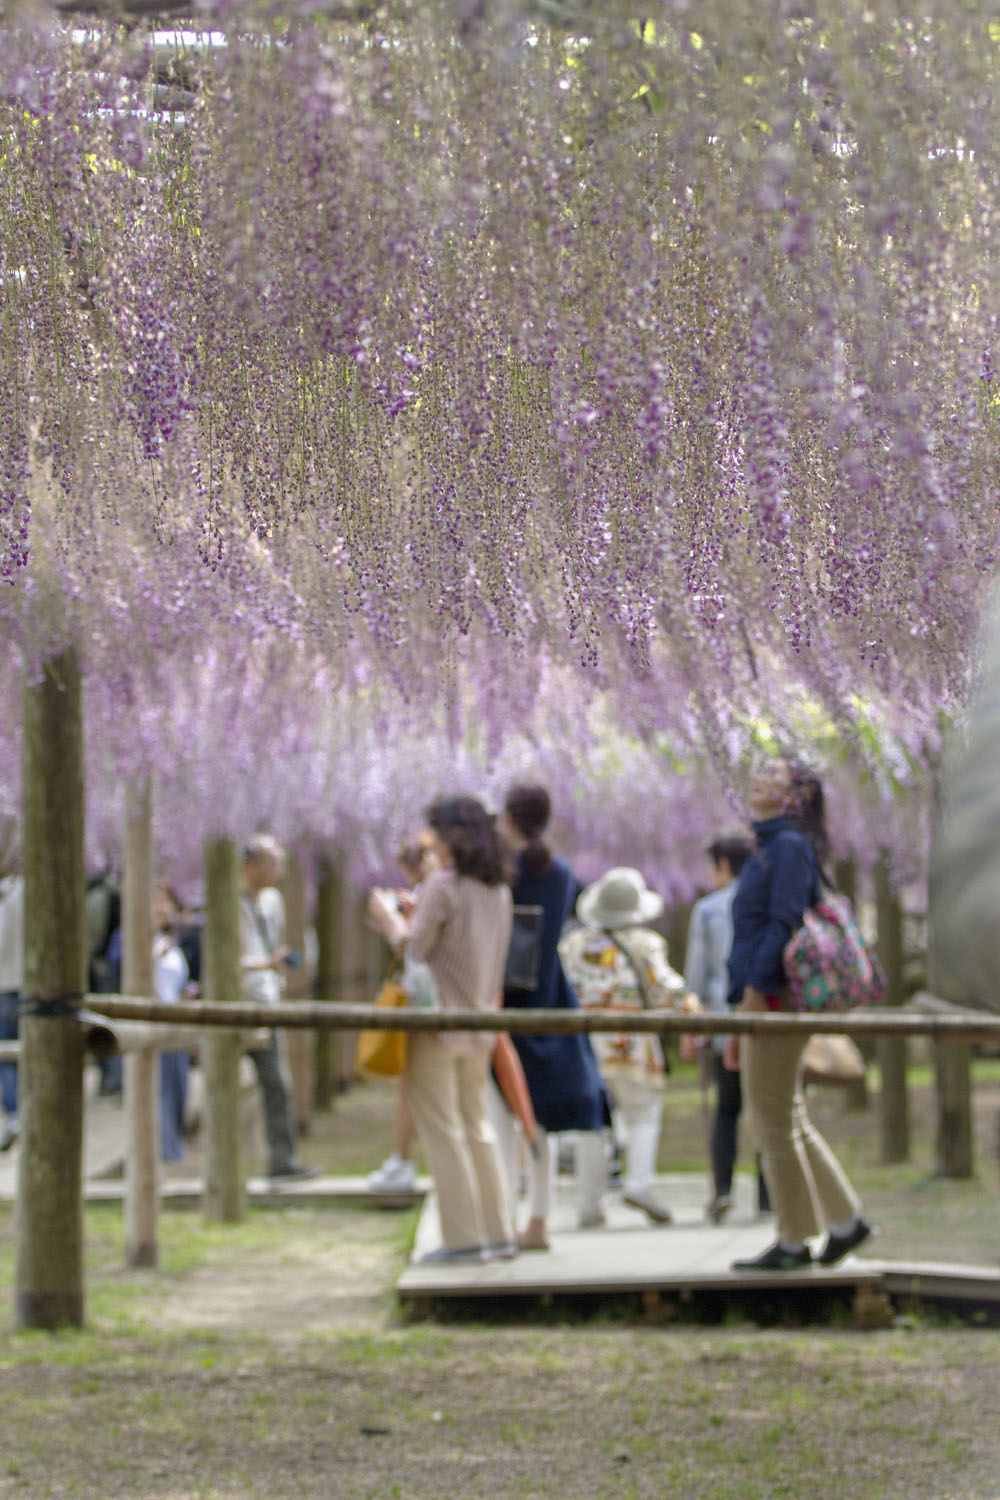 Kawachi Fuji Garden, Japan